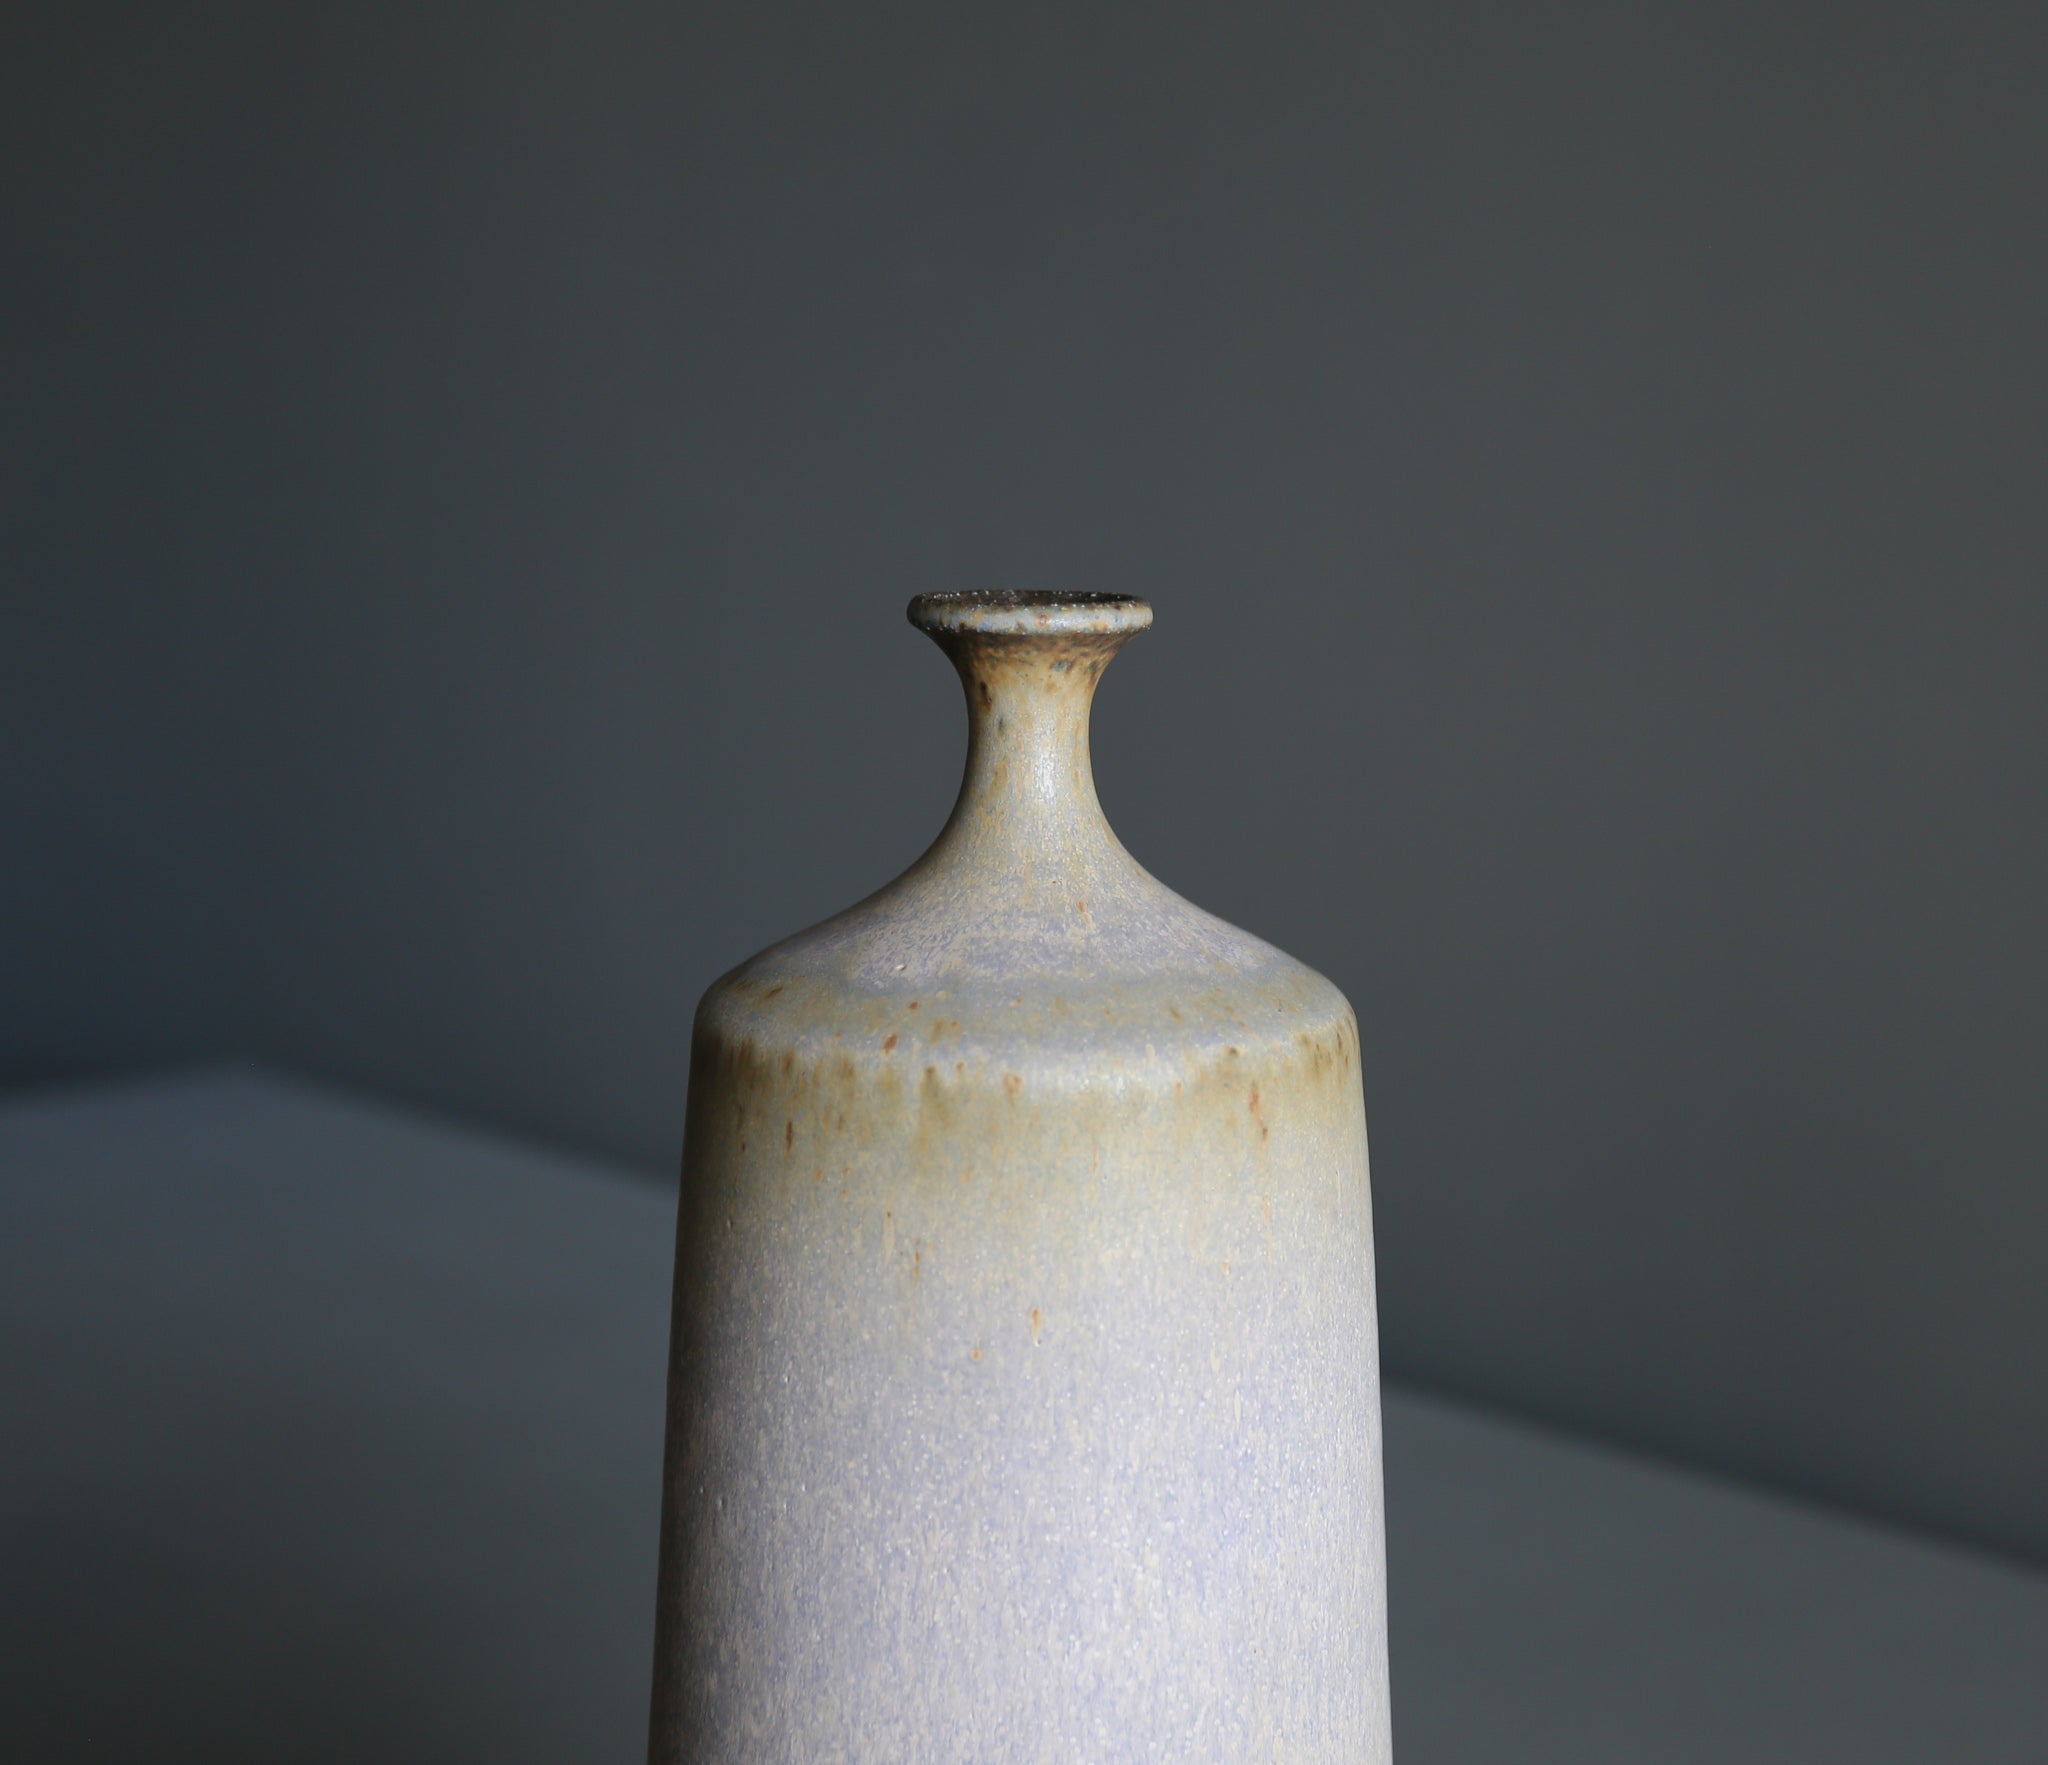 Tim Keenan Ceramic Vase